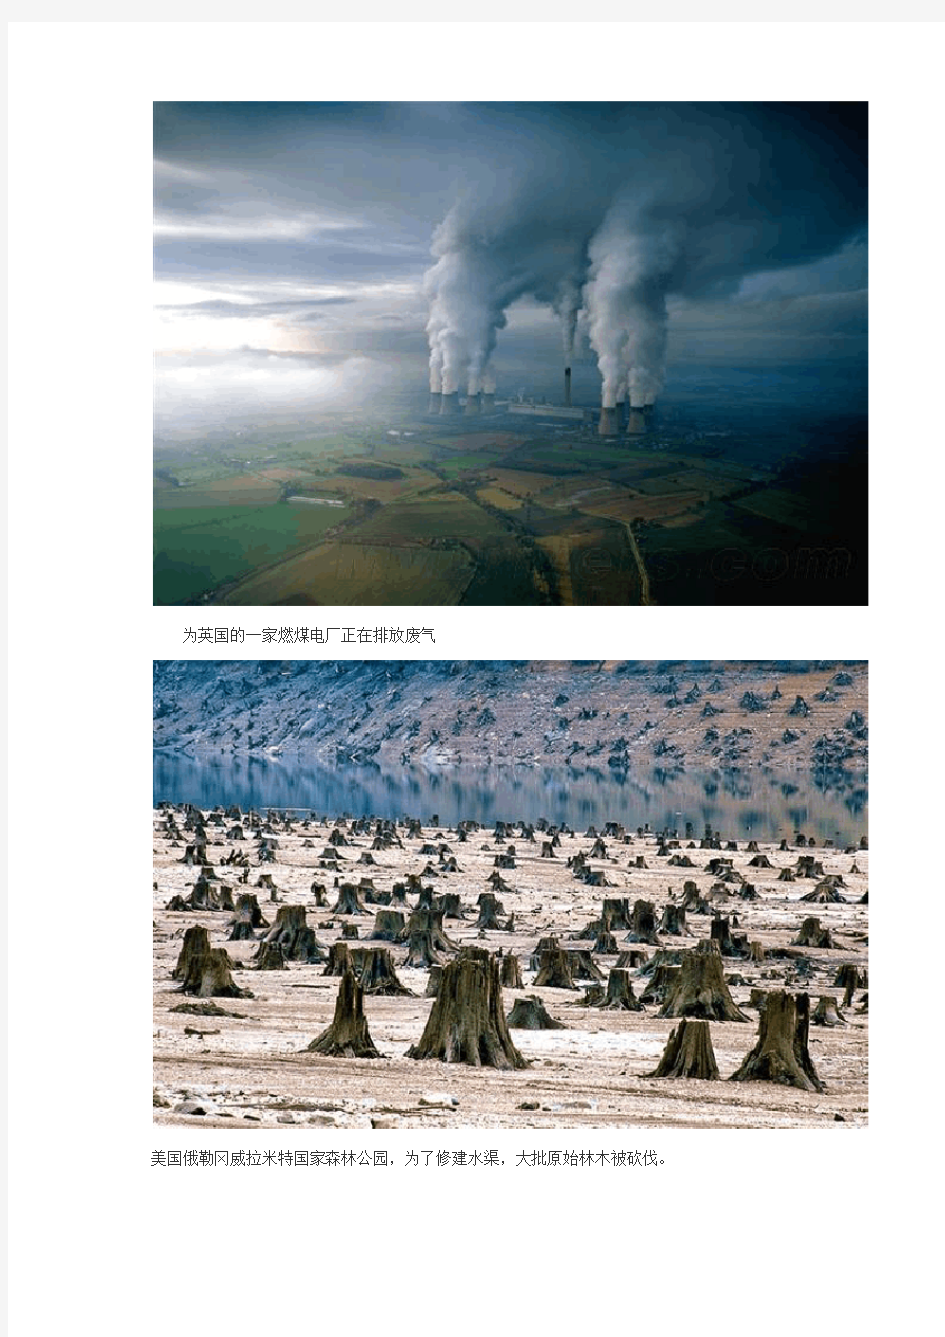 19张记录人类正在毁灭地球的照片[001]